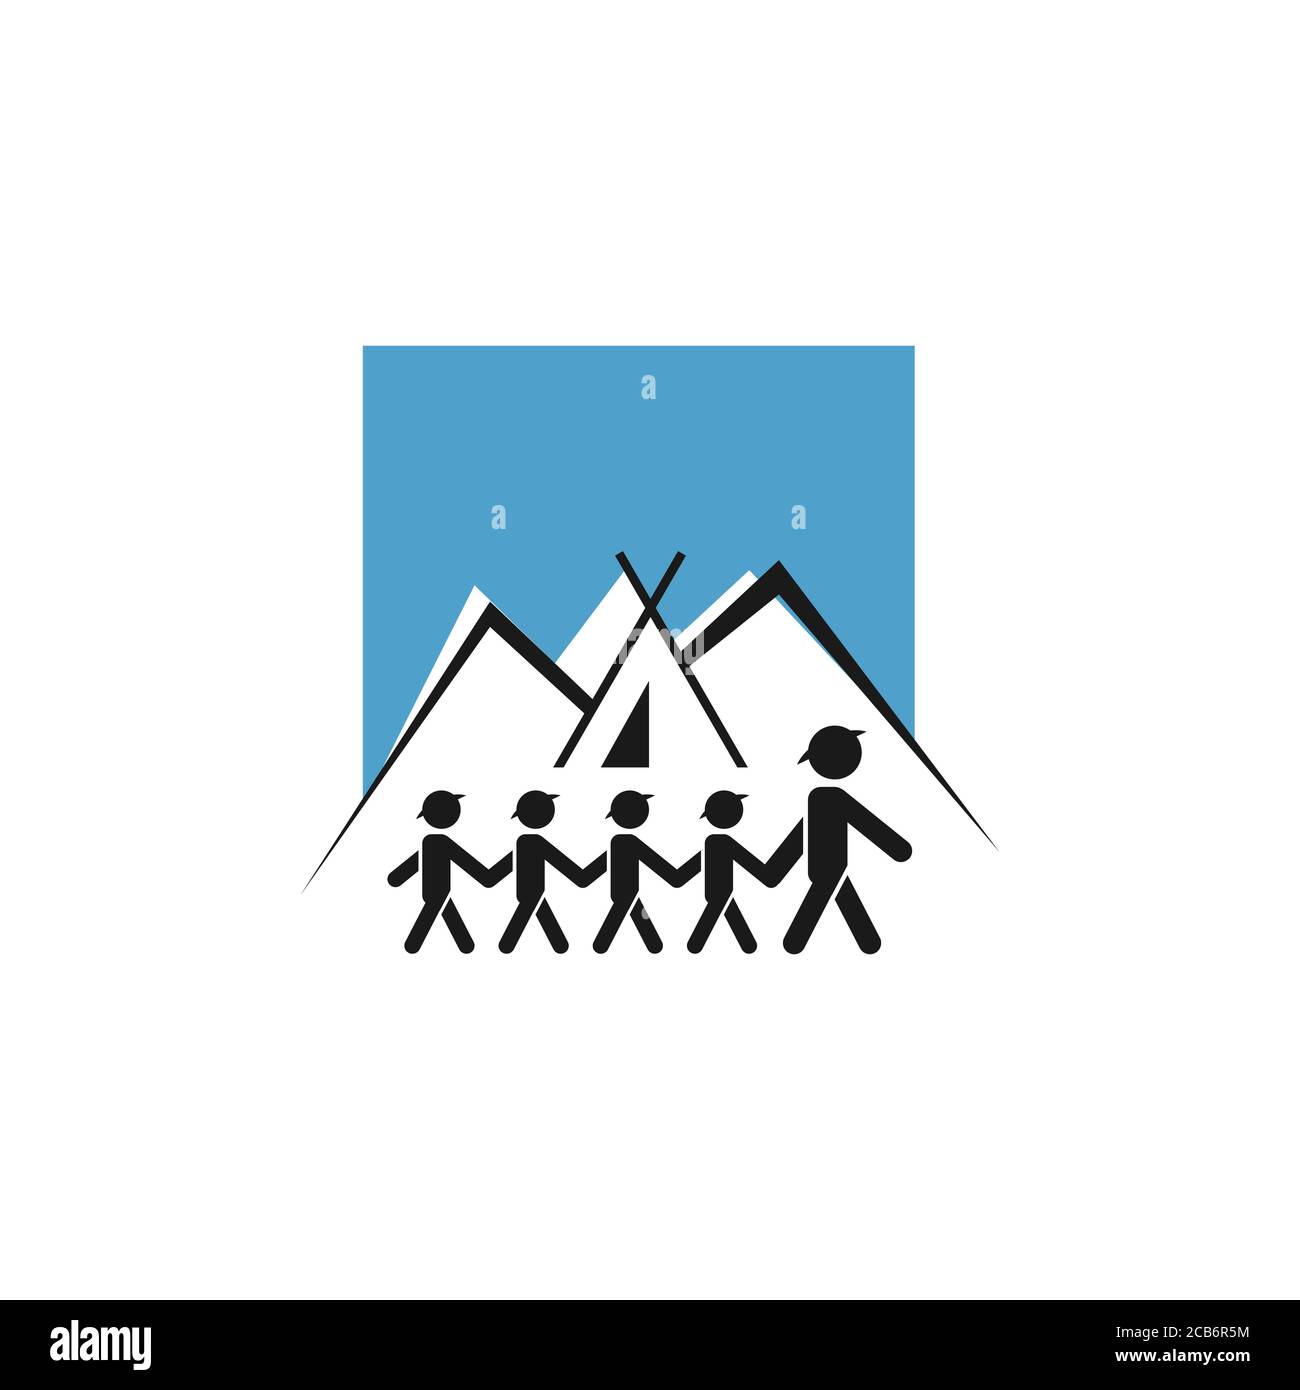 Junge Scout Logo Vektor Illustration. Young Boy und Girls Scout und Trainer beim Camping in der Berg-Design-Vorlage isoliert auf weißem Hintergrund Stock Vektor